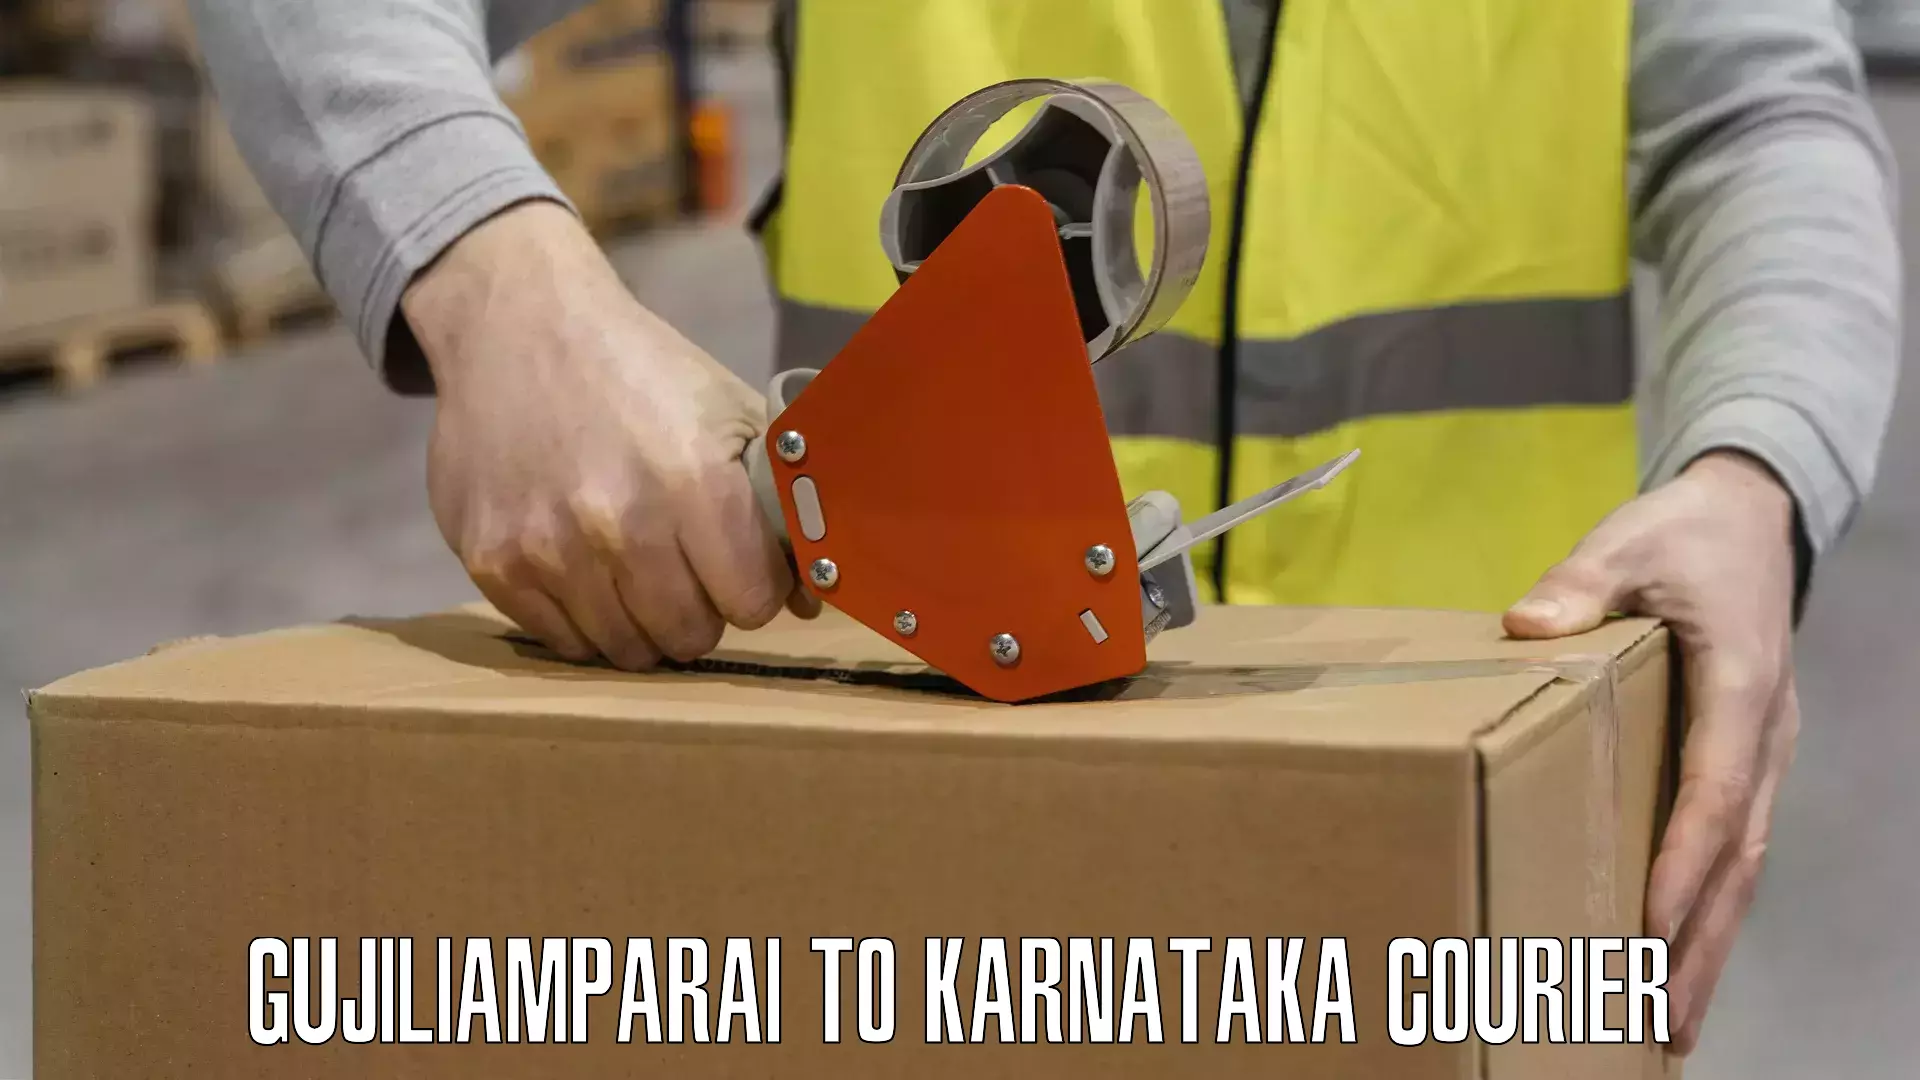 Personalized courier solutions Gujiliamparai to Manvi